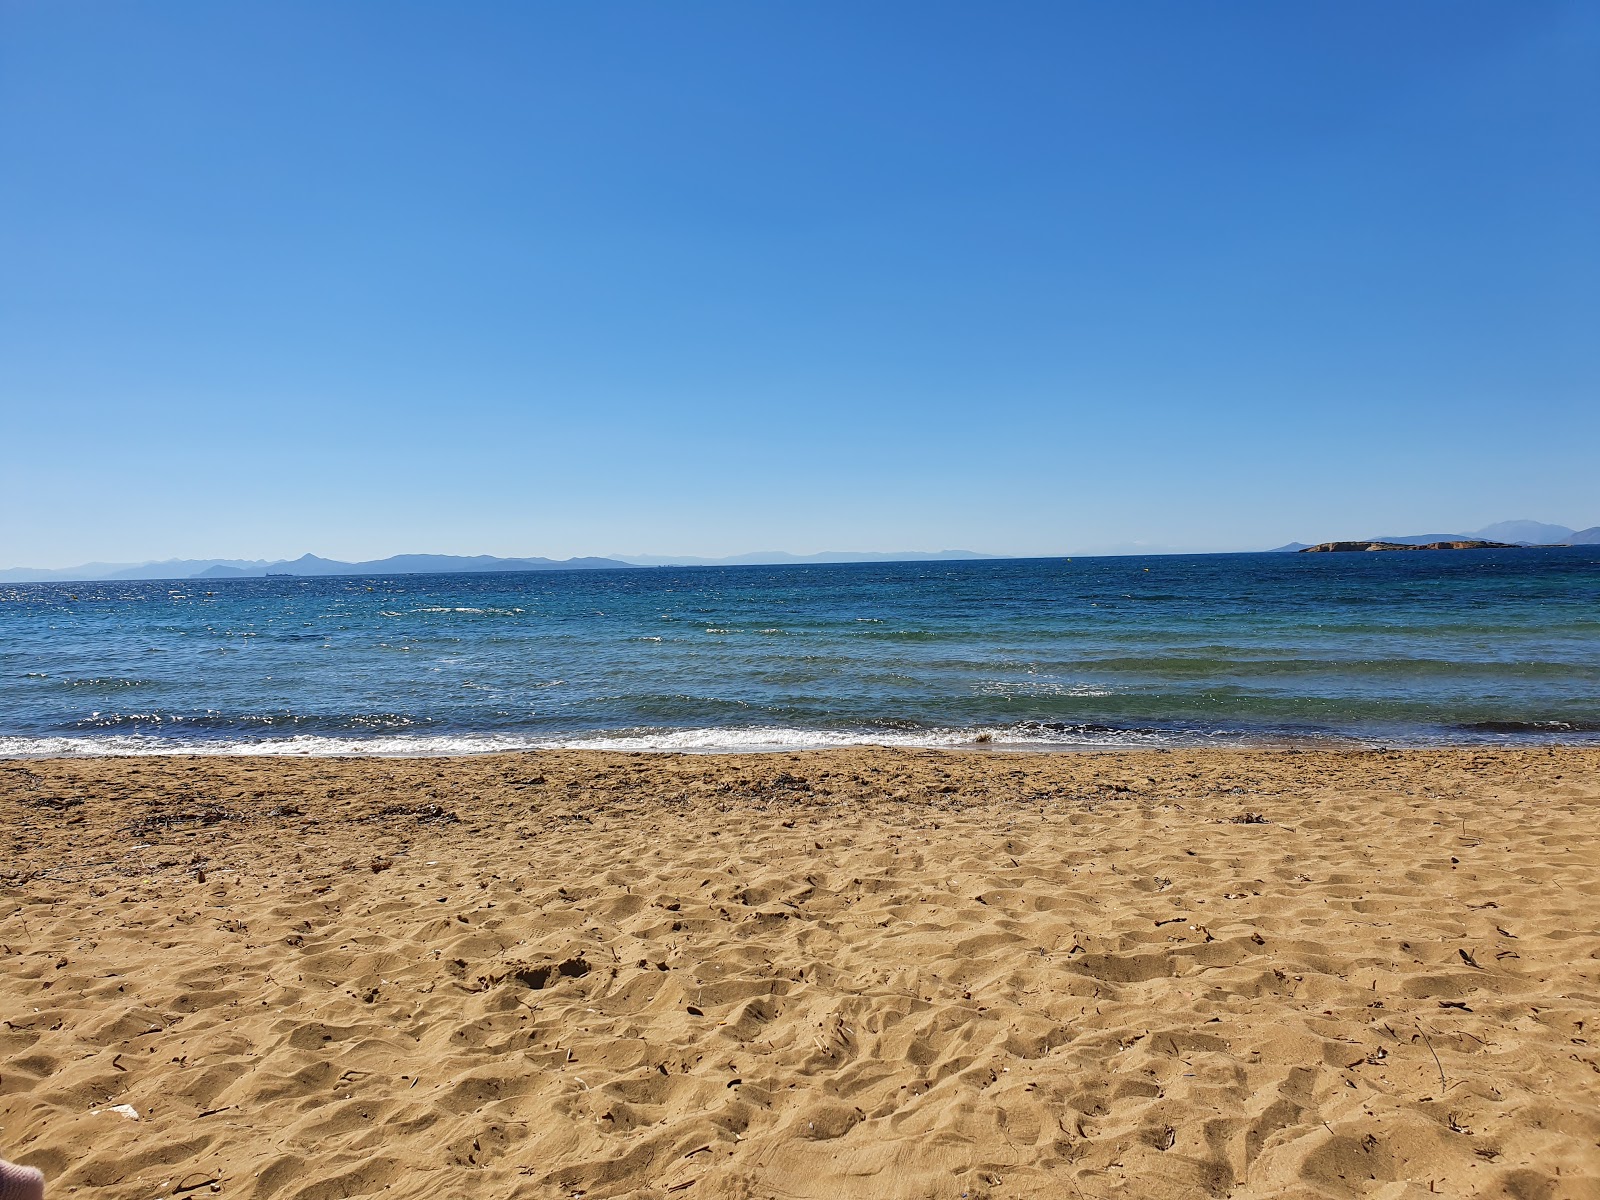 Photo de Mikro Kavouri beach - endroit populaire parmi les connaisseurs de la détente